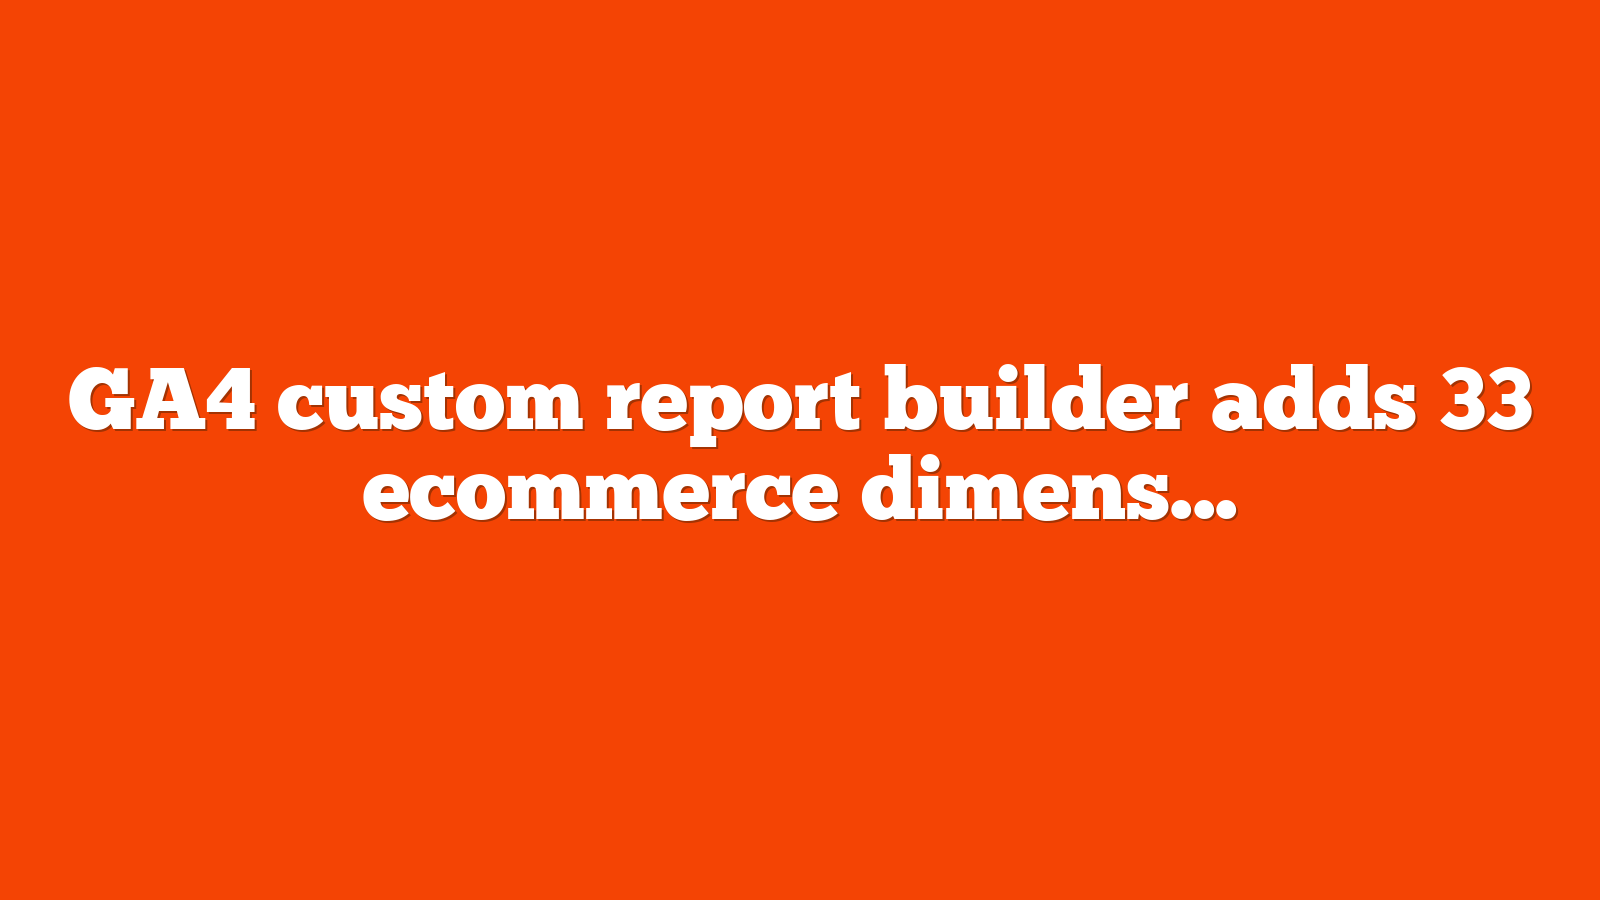 GA4 custom report builder adds 33 ecommerce dimensions metrics